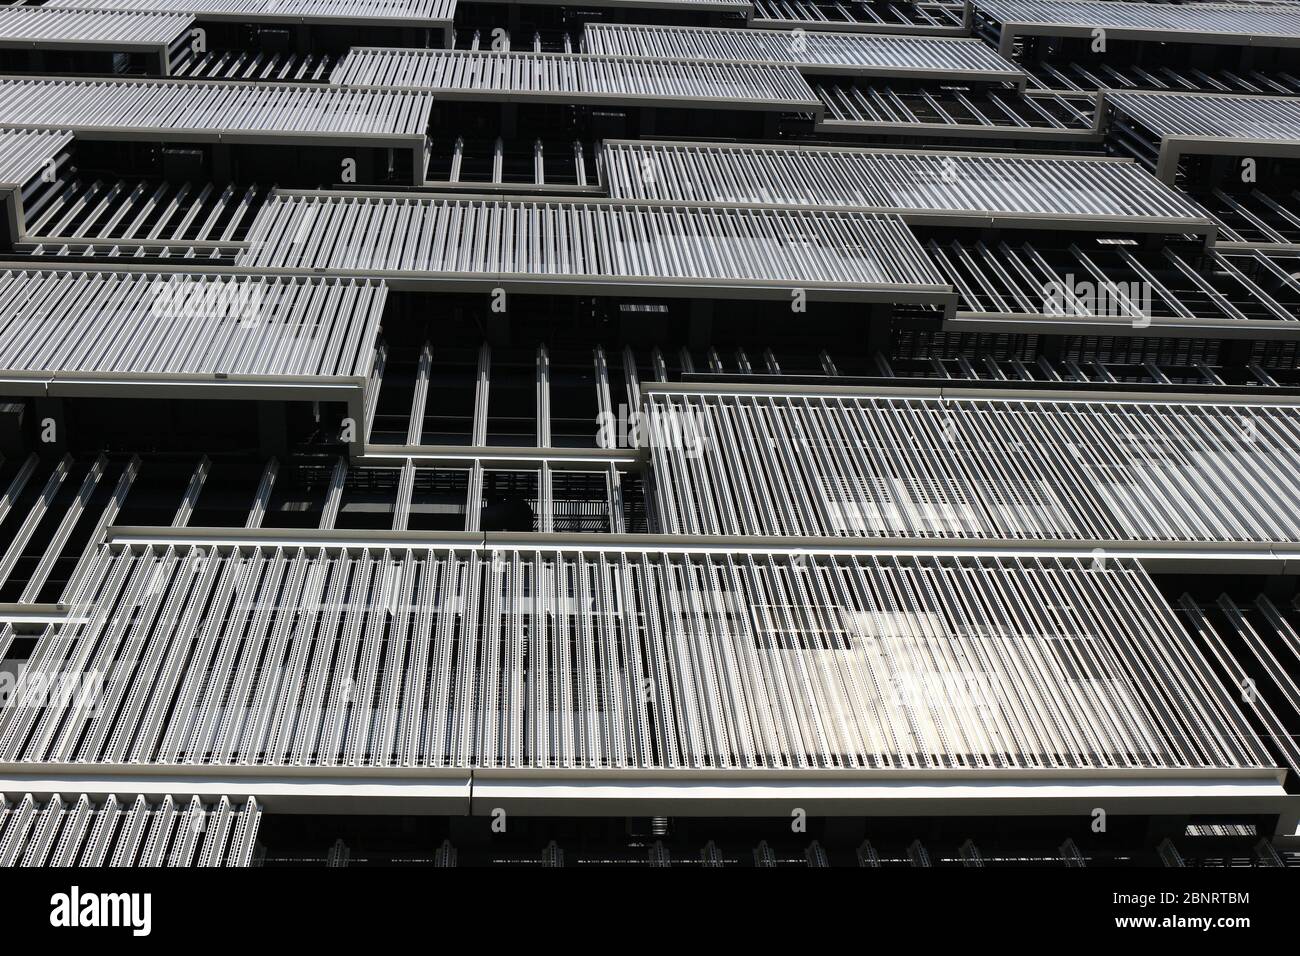 Das Gebäude ist mit Gittermastplatten aus Metall ausgestattet Stockfoto